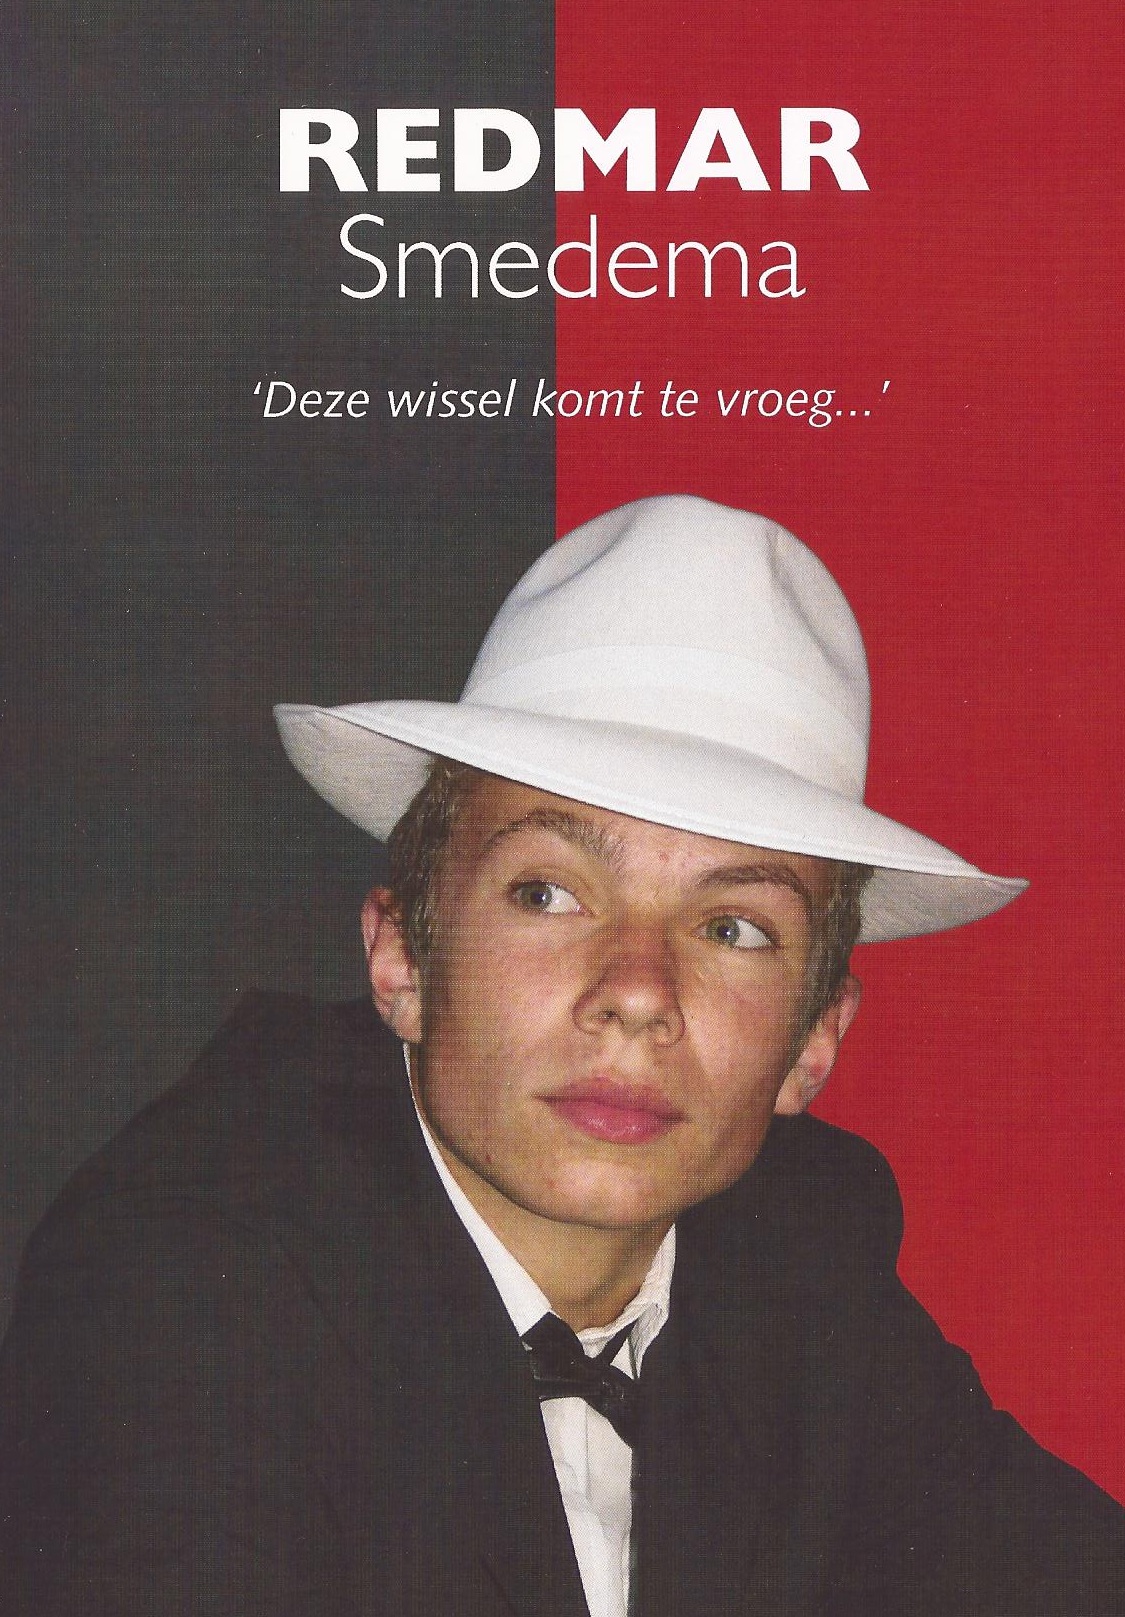 Boek over Redmar Smedema